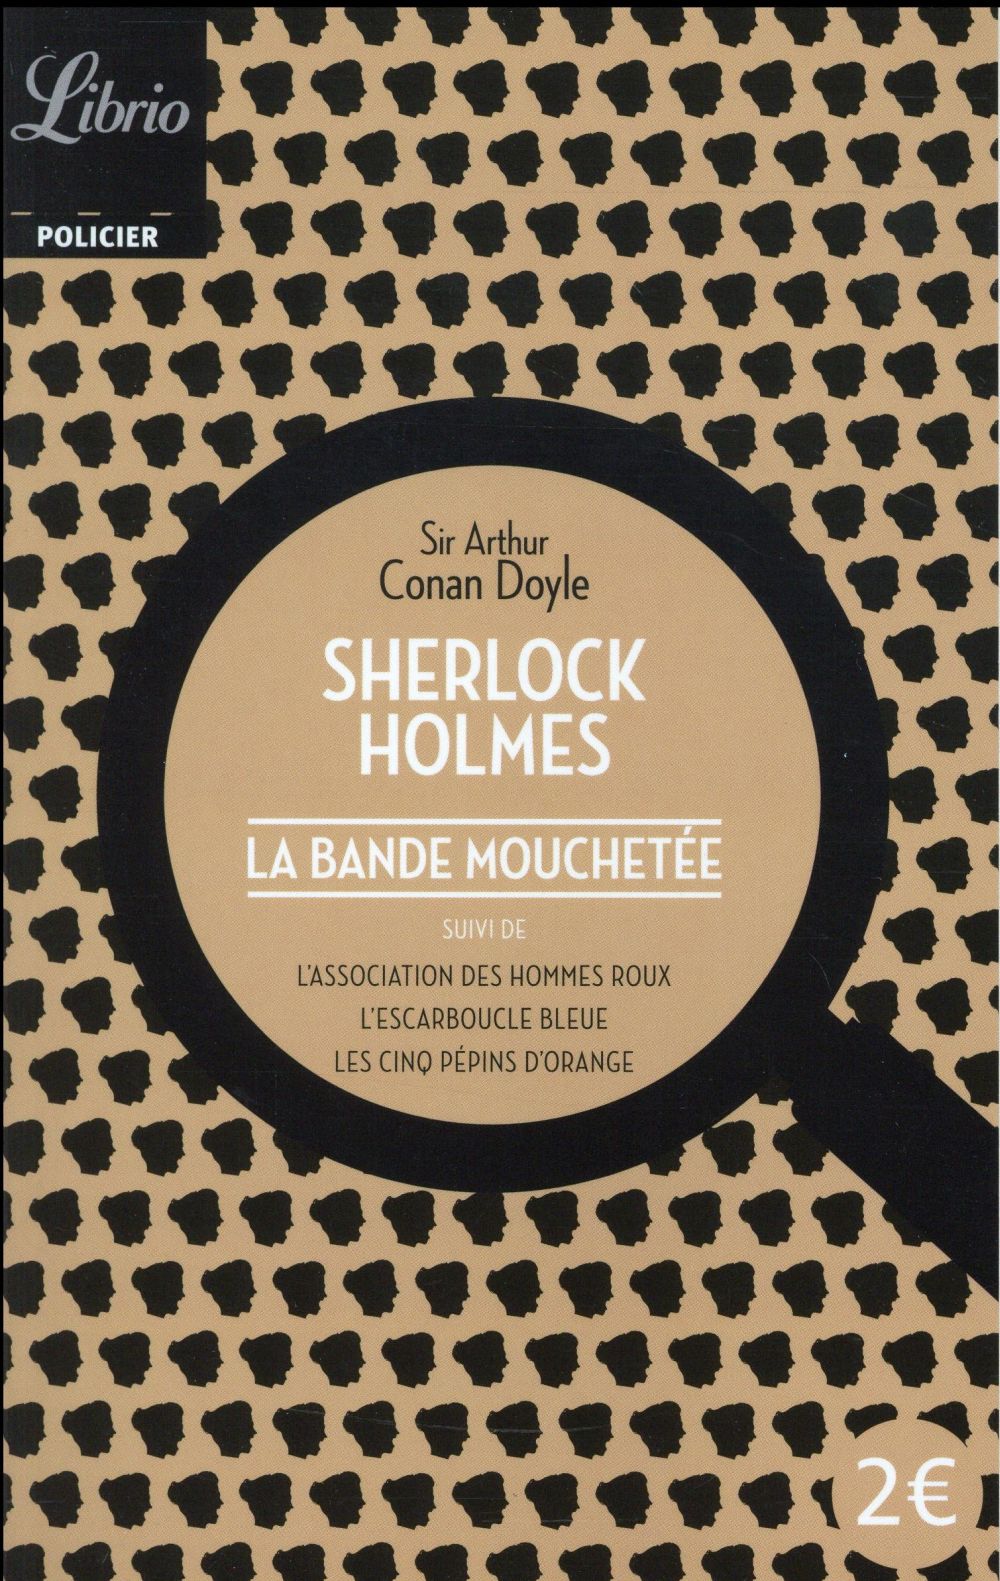 SHERLOCK HOLMES - LA BANDE MOUCHETEE - SUIVI DE L'ASSOCIATION DES HOMMES ROUX - L'ESCARMOUCLE BLEUE